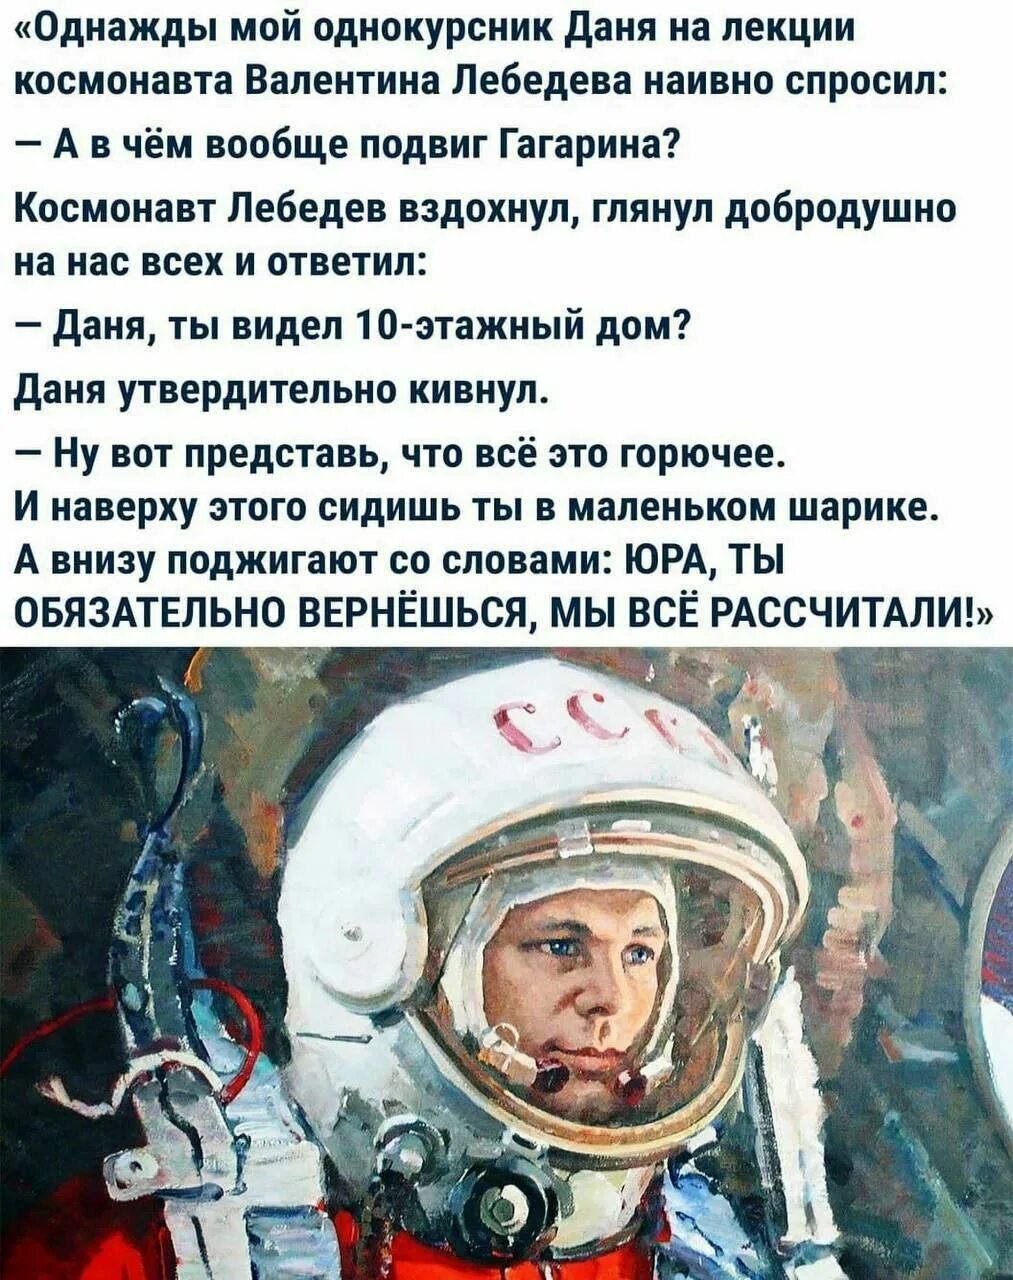 Рассказы о гагарине читать. День космонавтики. В чем подвиг Гагарина. В чем героизм Гагарина.